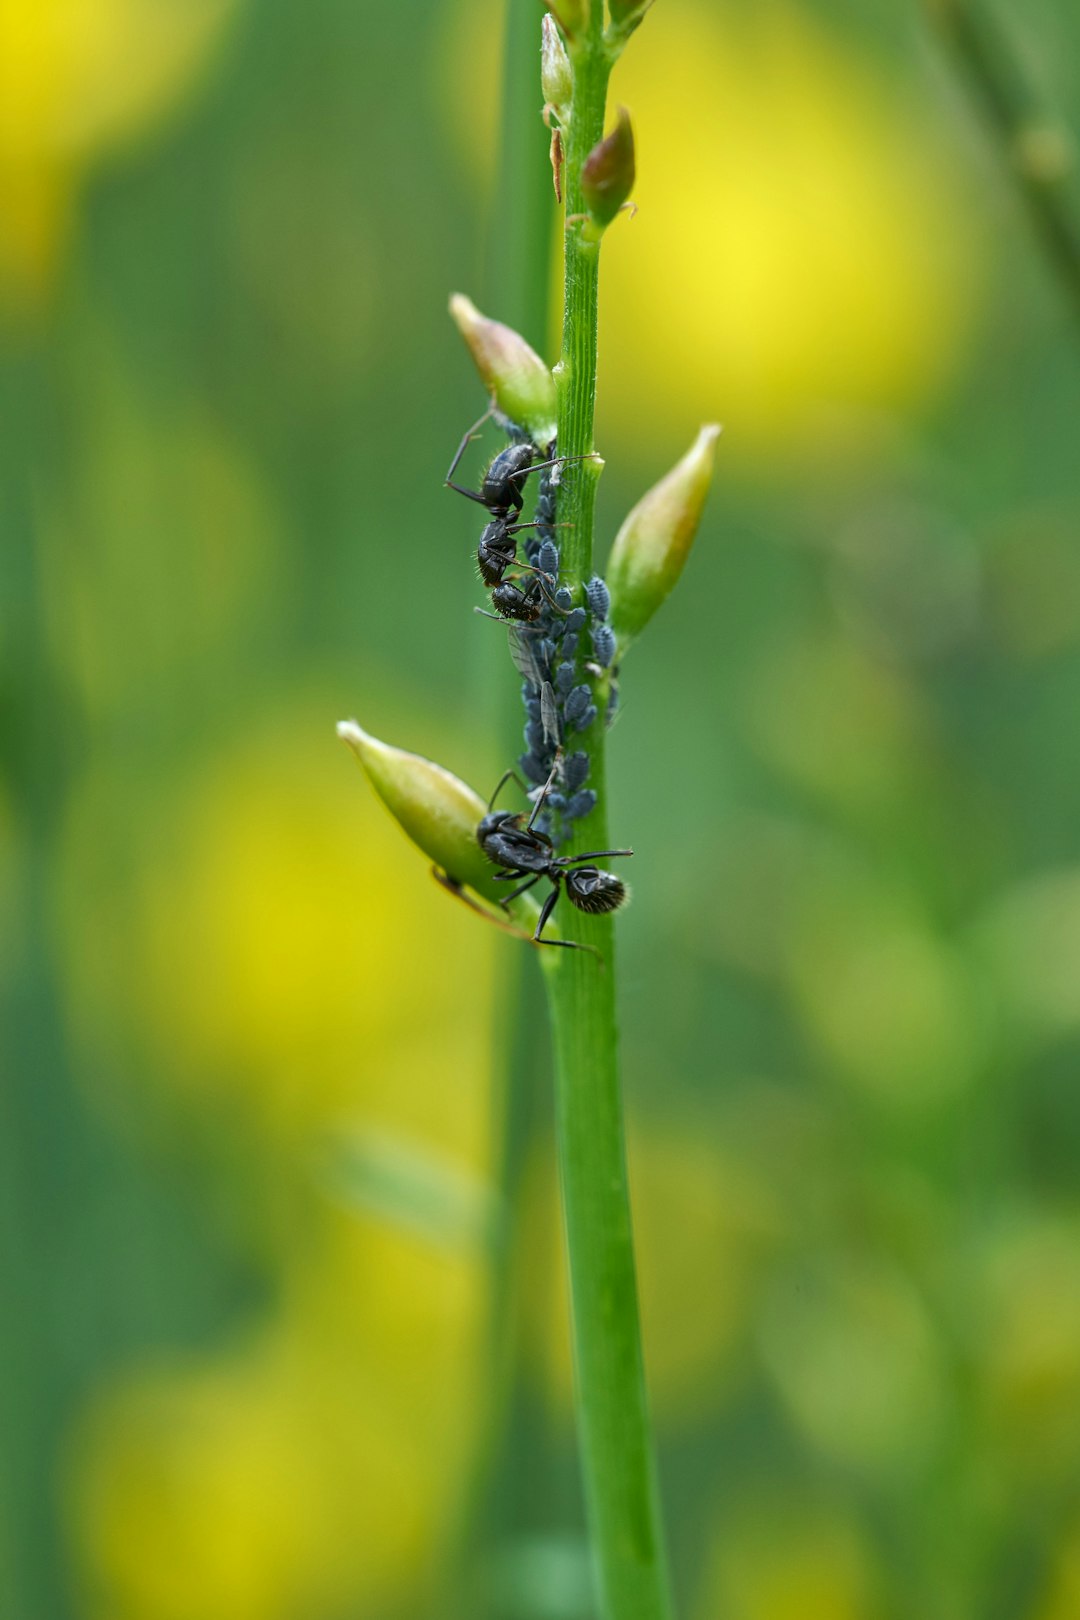 black ant on green stem in tilt shift lens